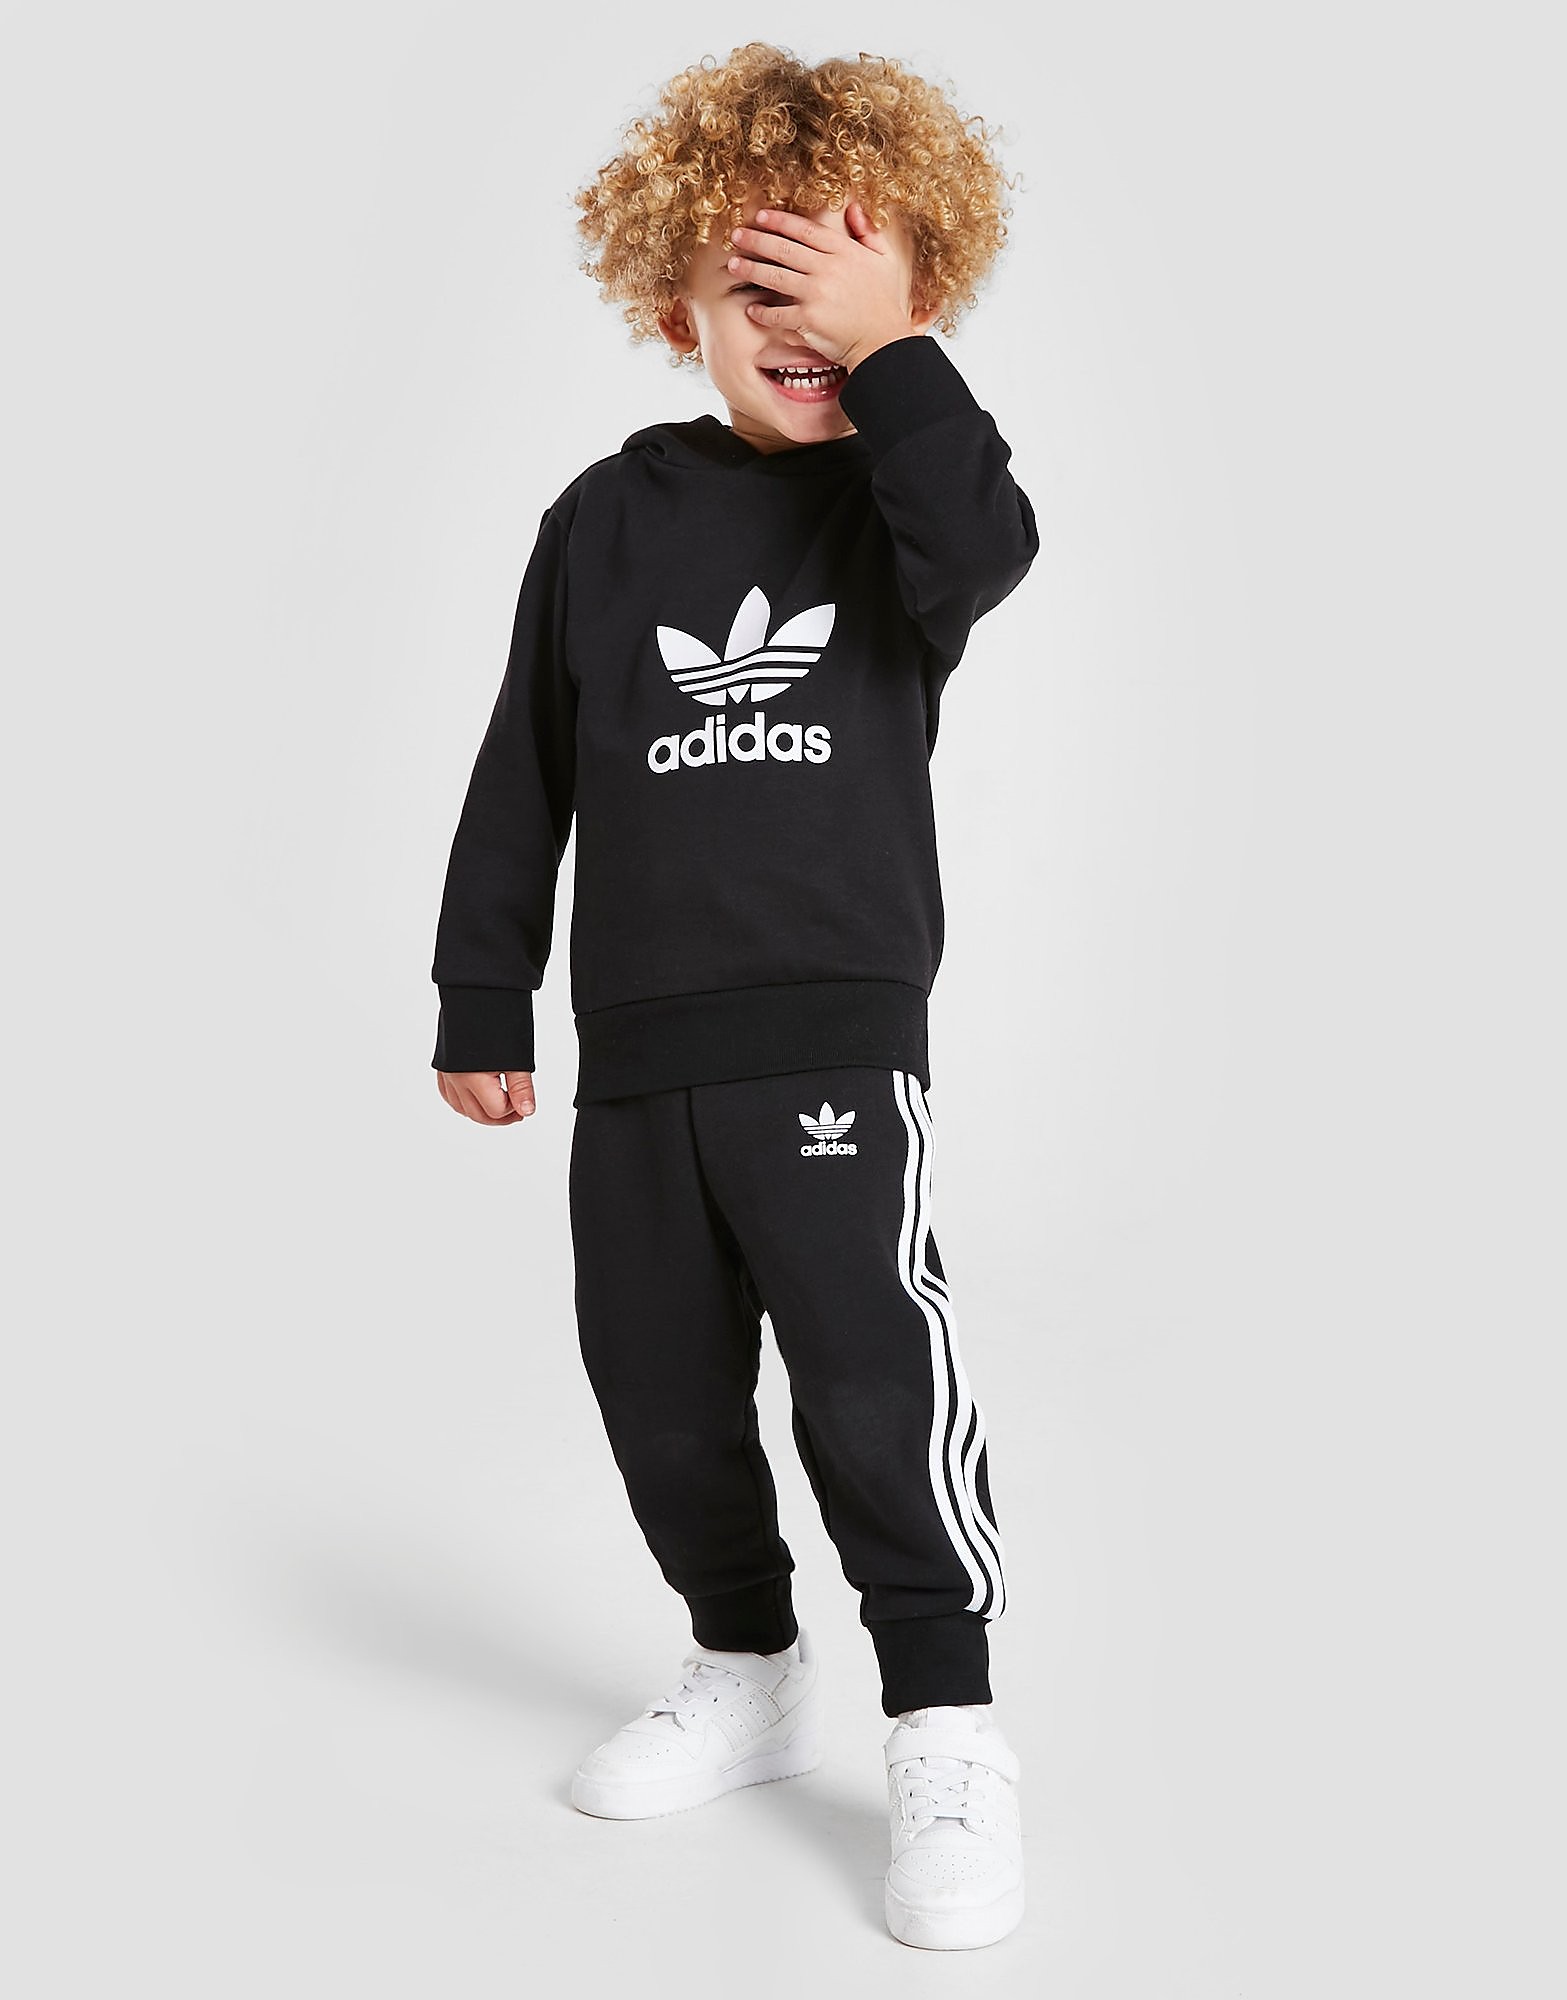 Adidas Originals Fato de Treino Trefoil Pullover de Bebé - Preto - Kids, Preto